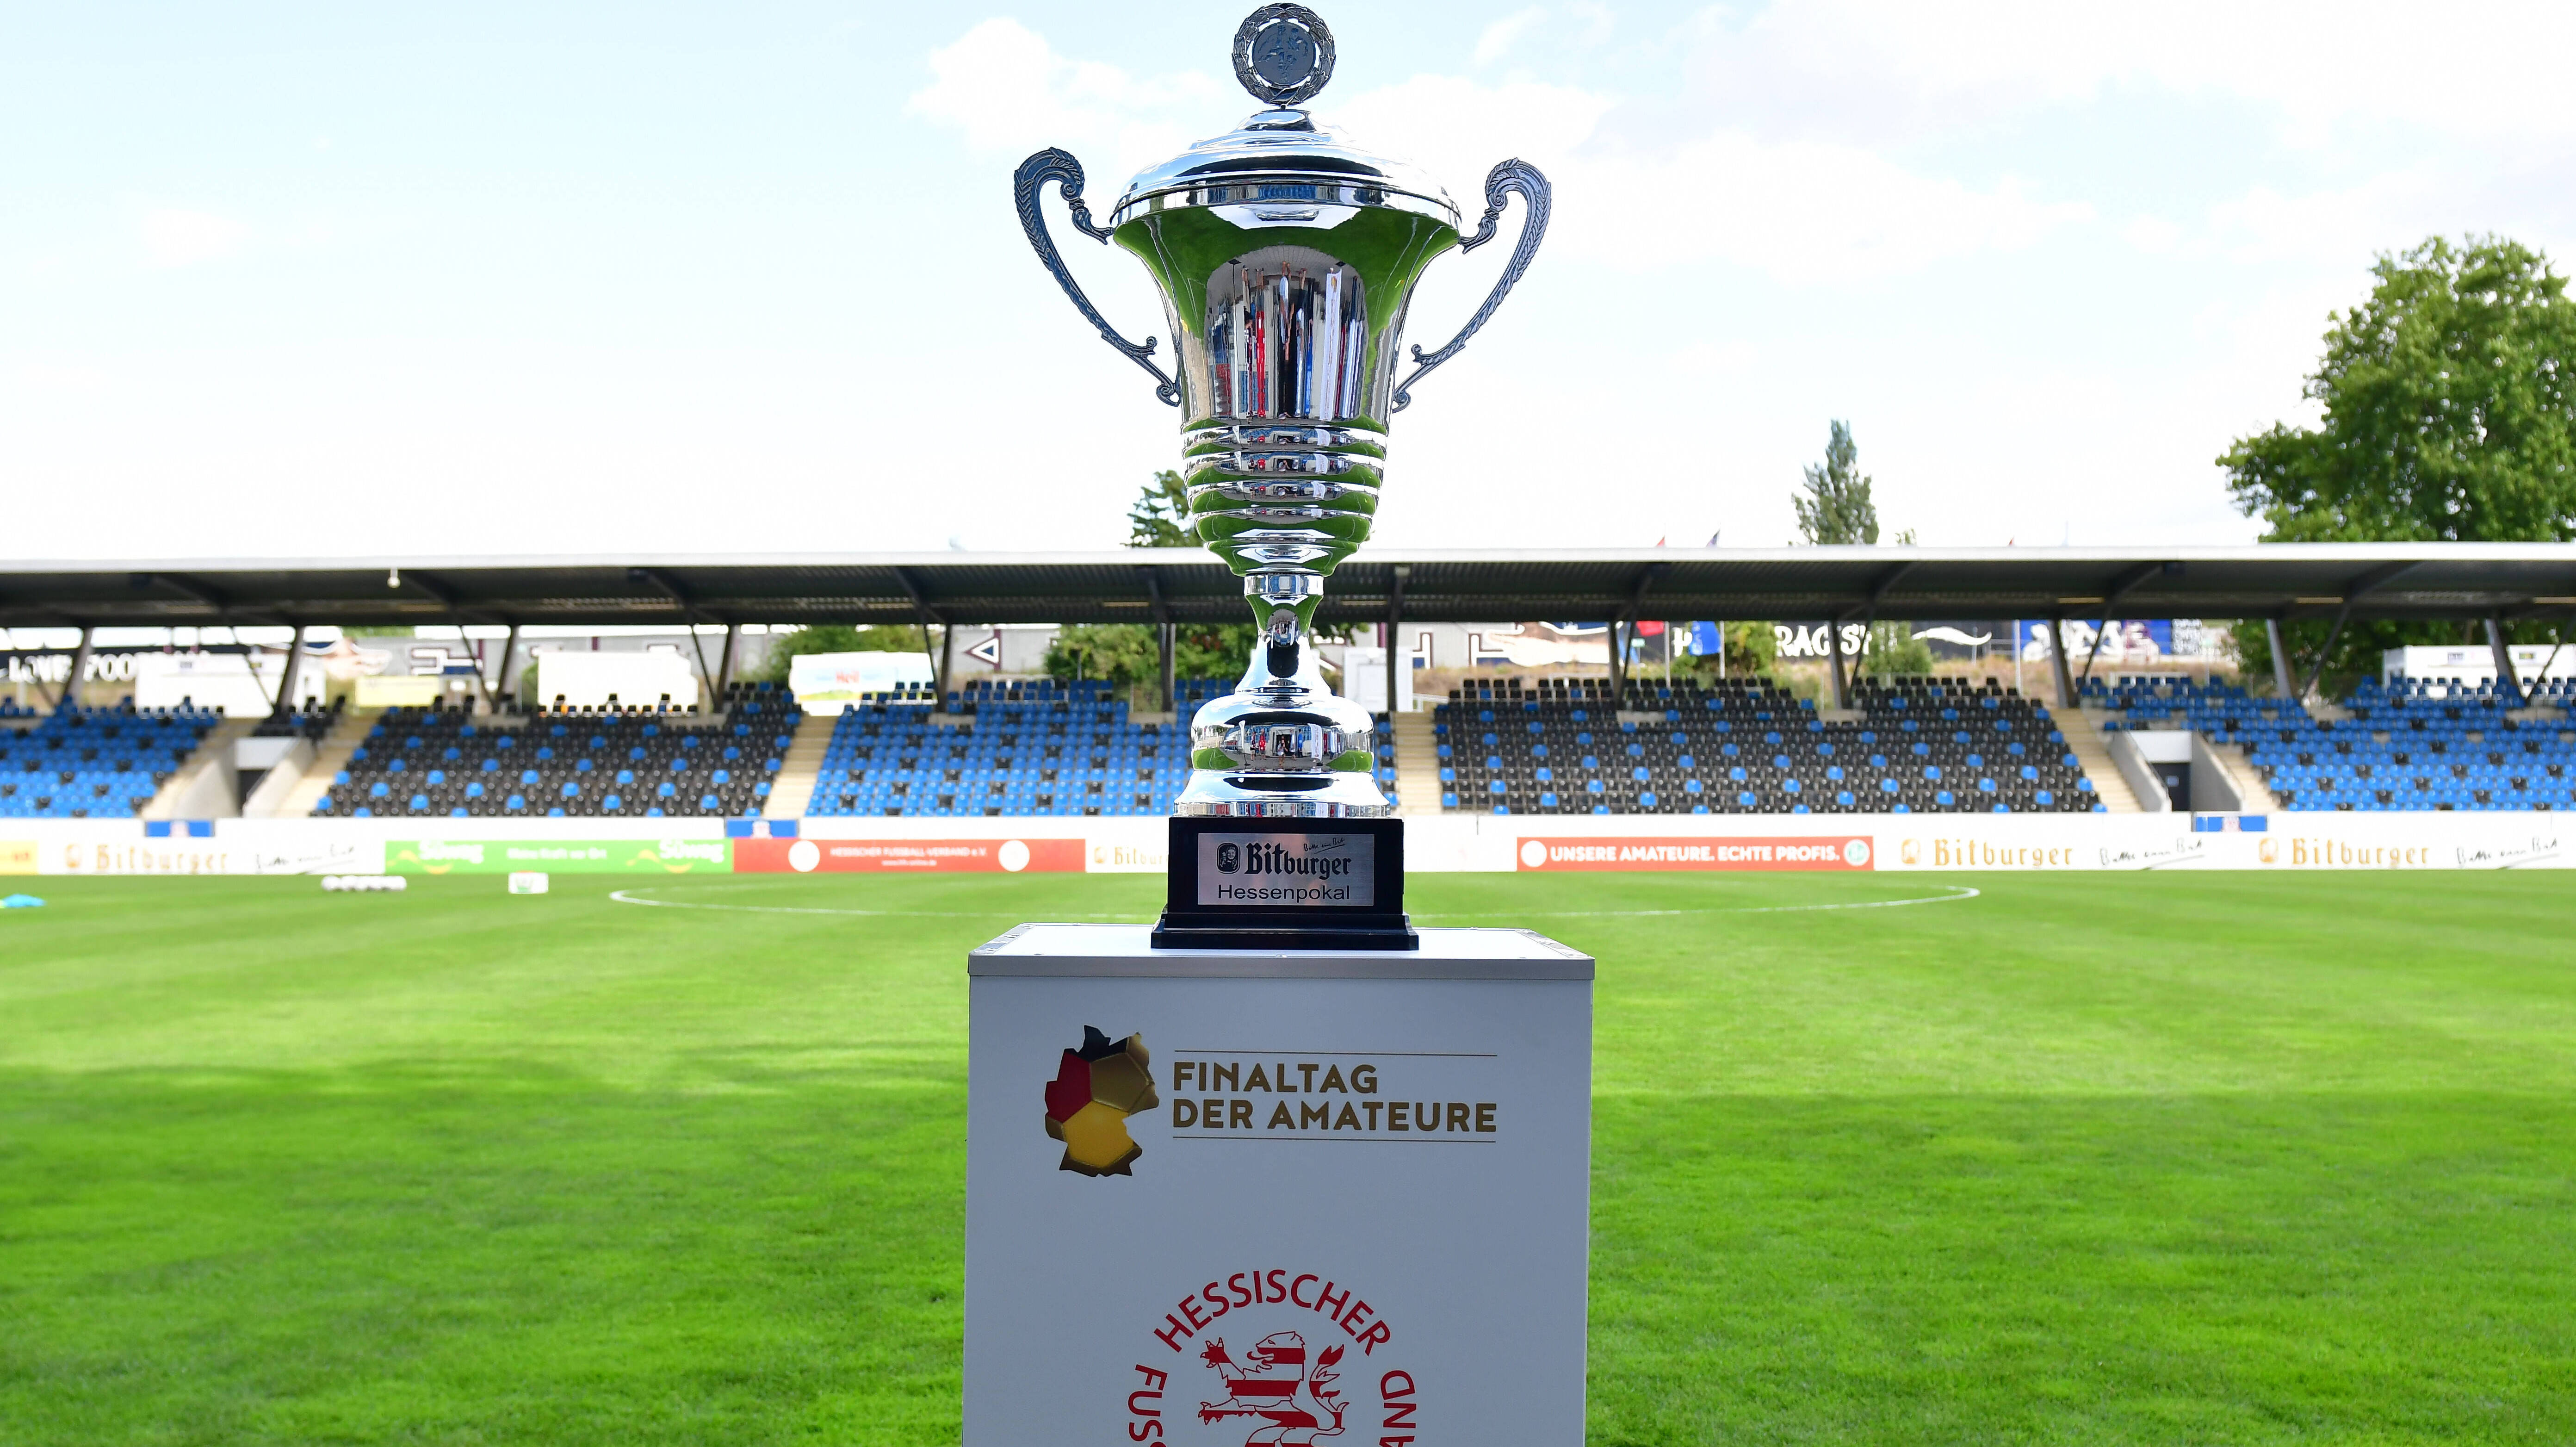 Finaltag der Amateure: Pokal des Hessischen Fußballverbandes